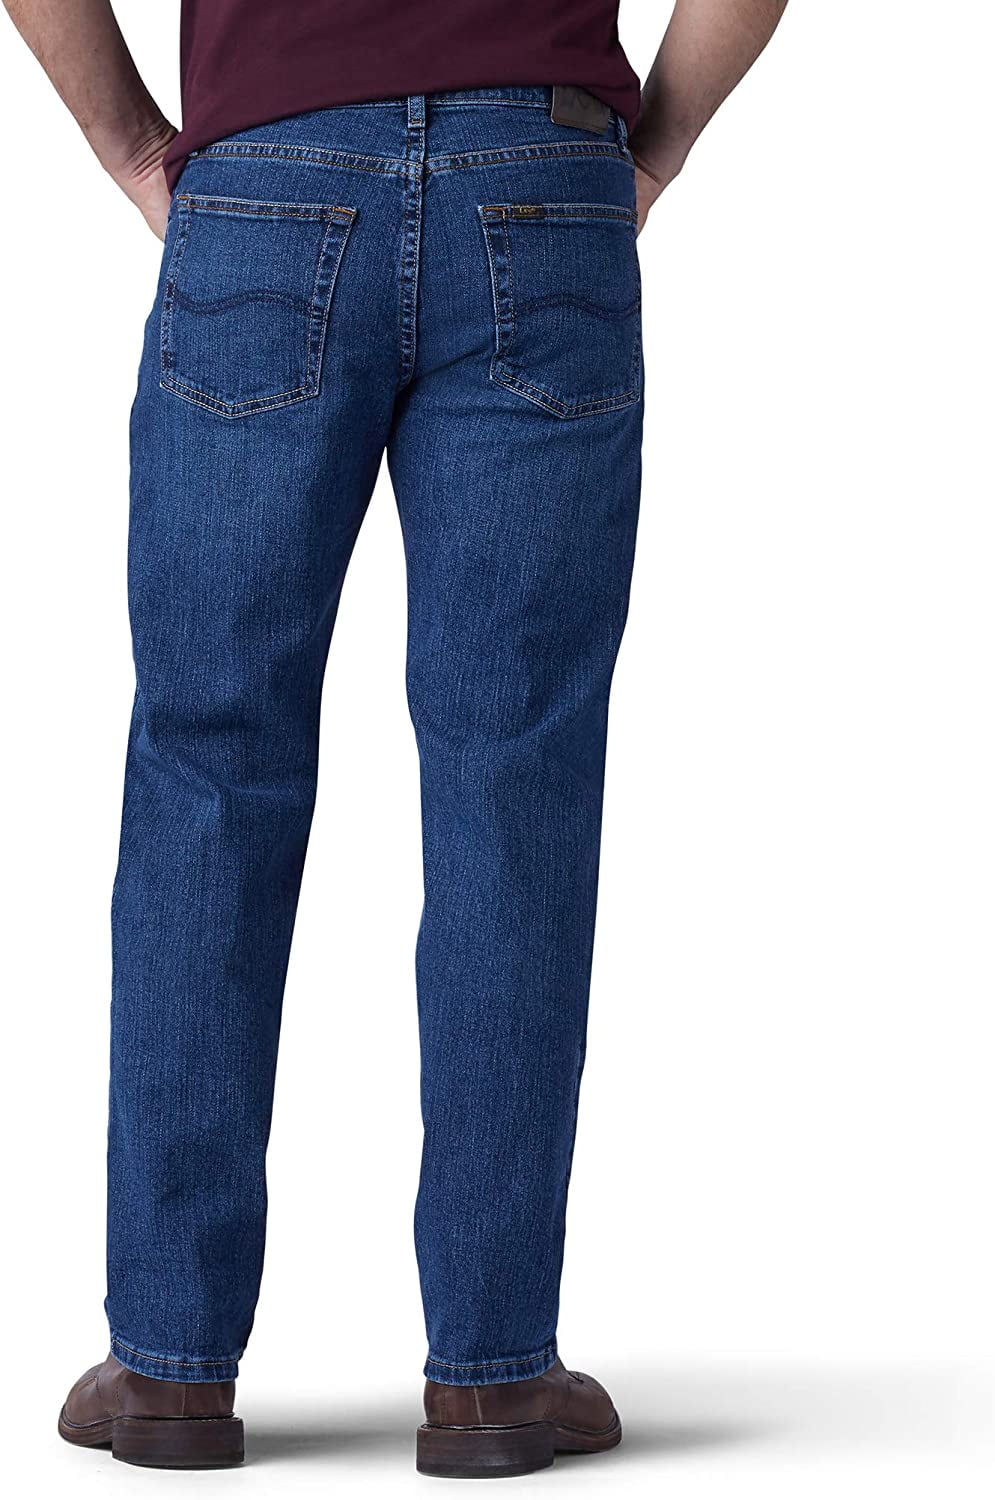 Pantalon Jeans Regular Fit Lee Hombre 689